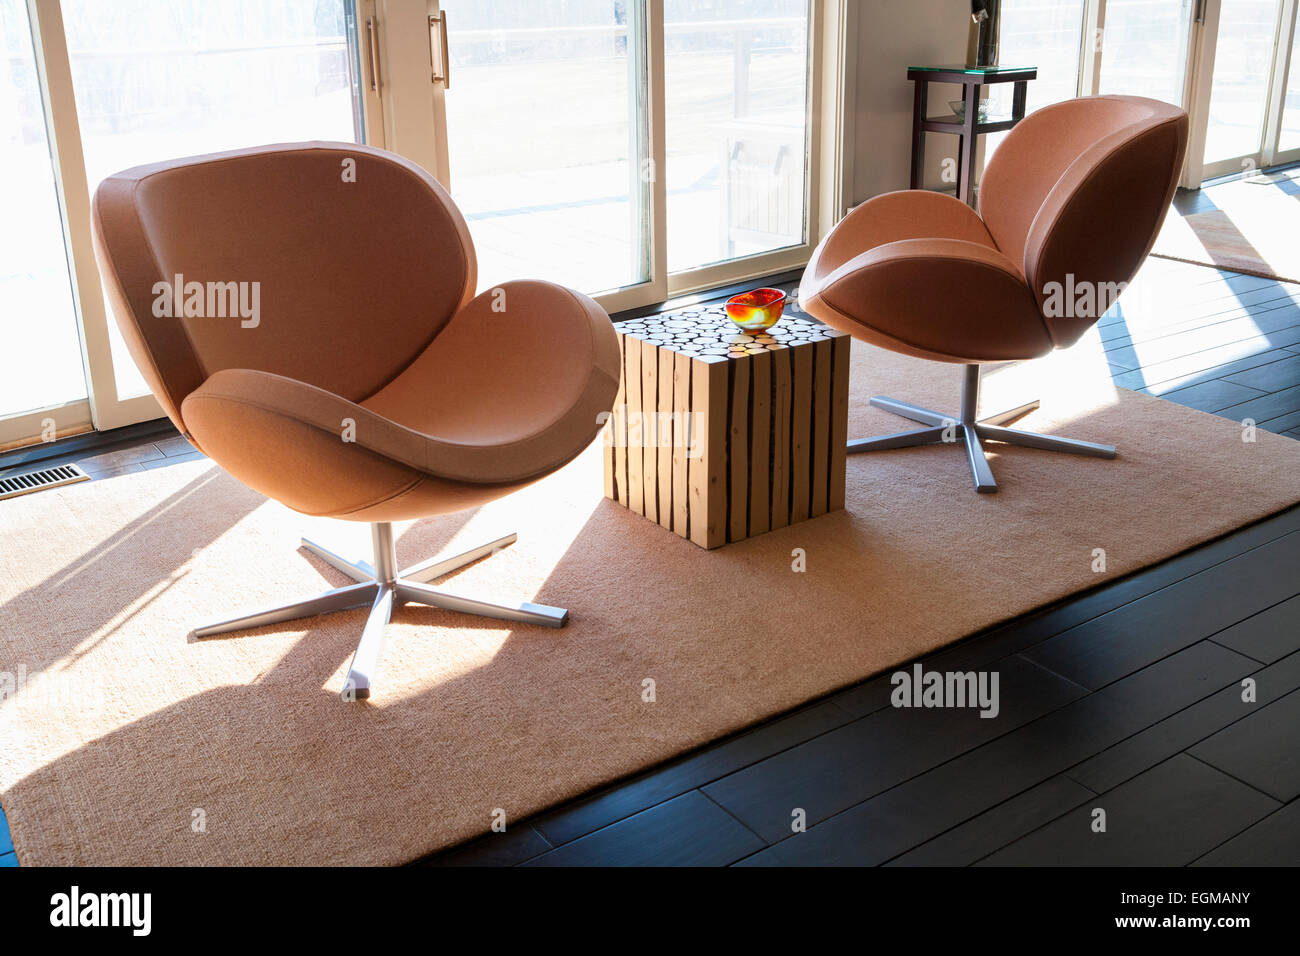 Due moderni Orange sedie girevoli sull'area Rug, pavimento in legno scuro Foto Stock